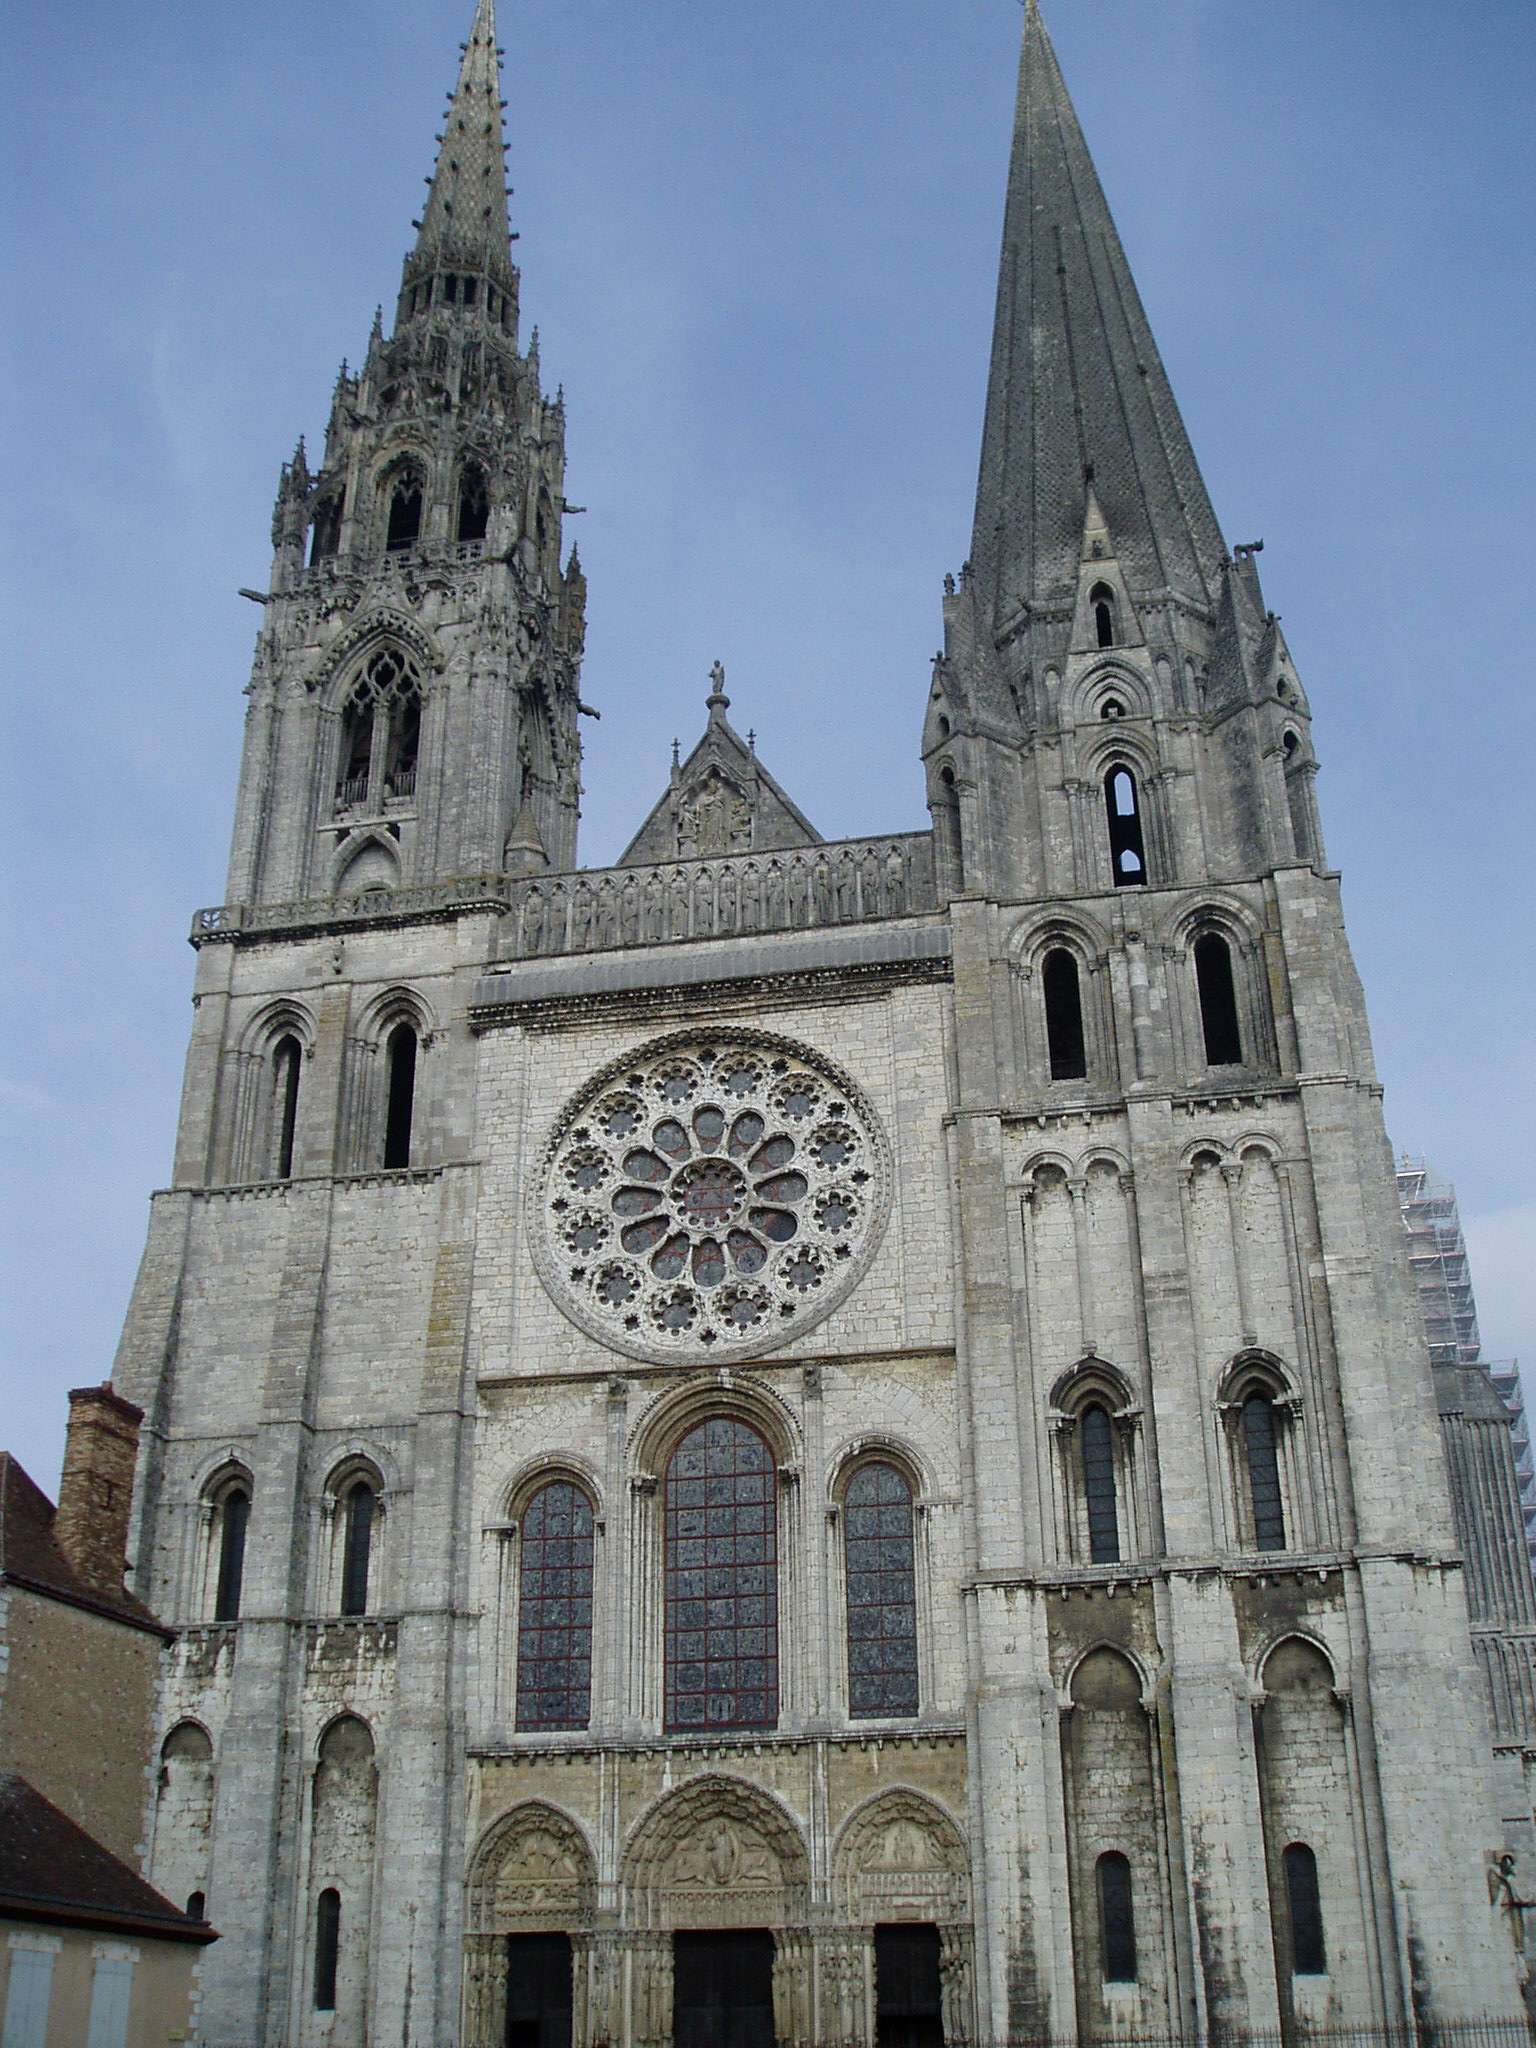 Arquitectura de la catedral de Chartres - Chartres: Arte, espiritualidad y esoterismo. (5)